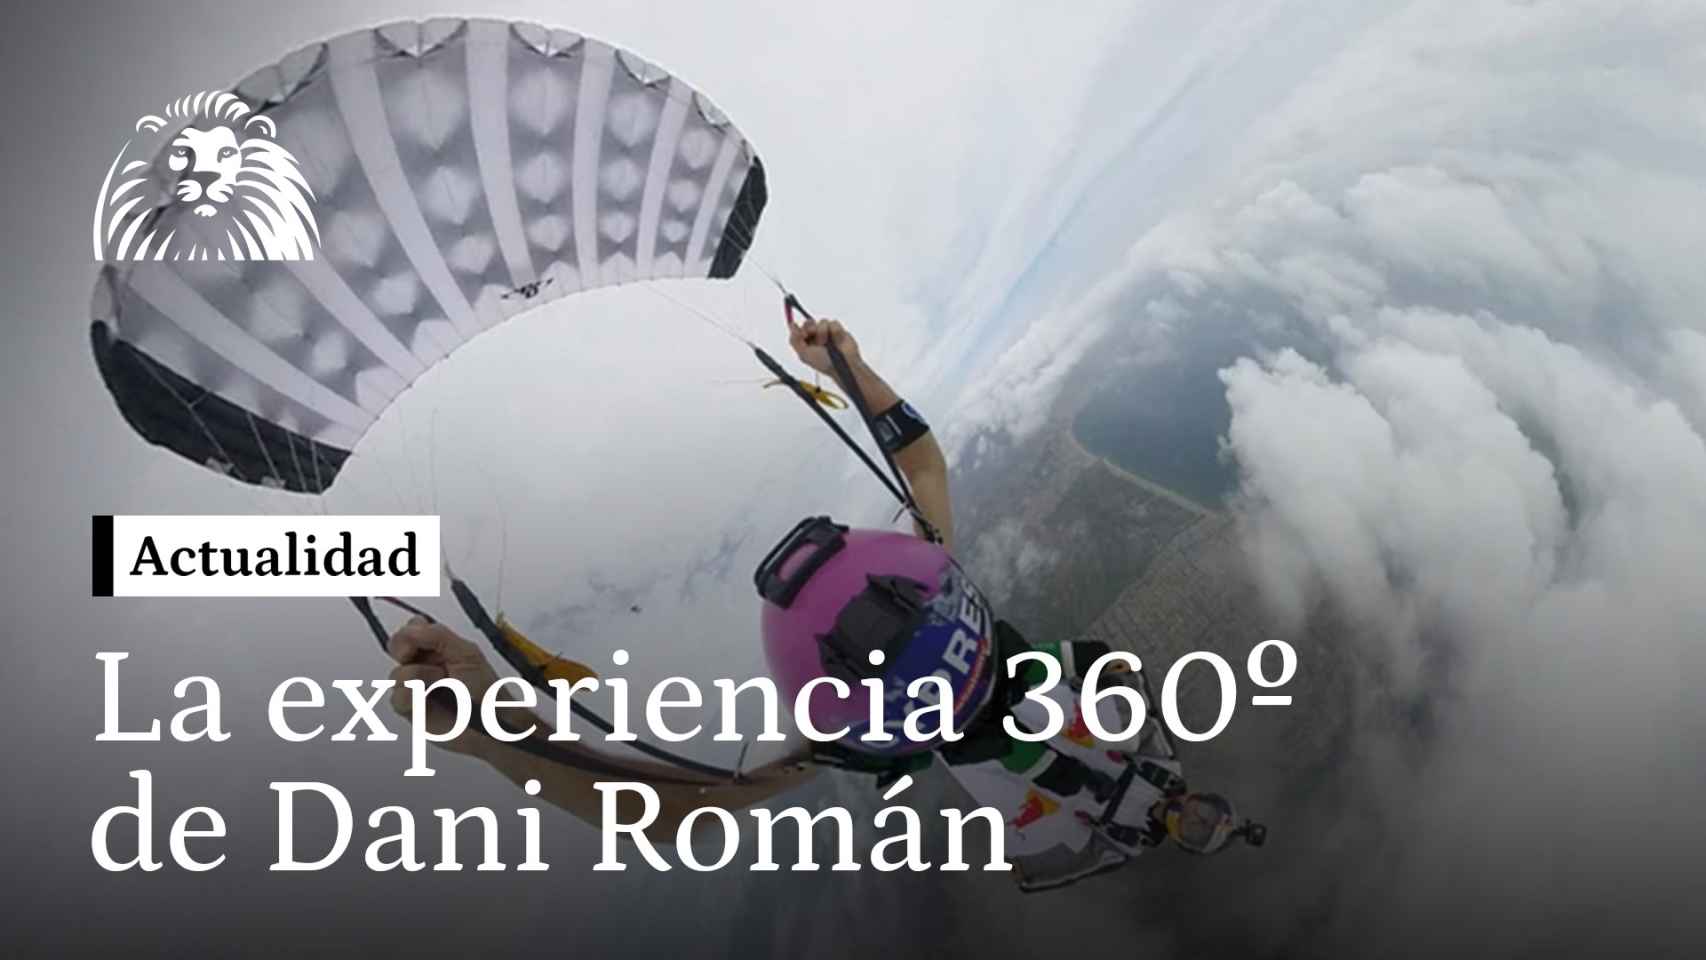 Vive la experiencia 360º del salto base de Dani Román